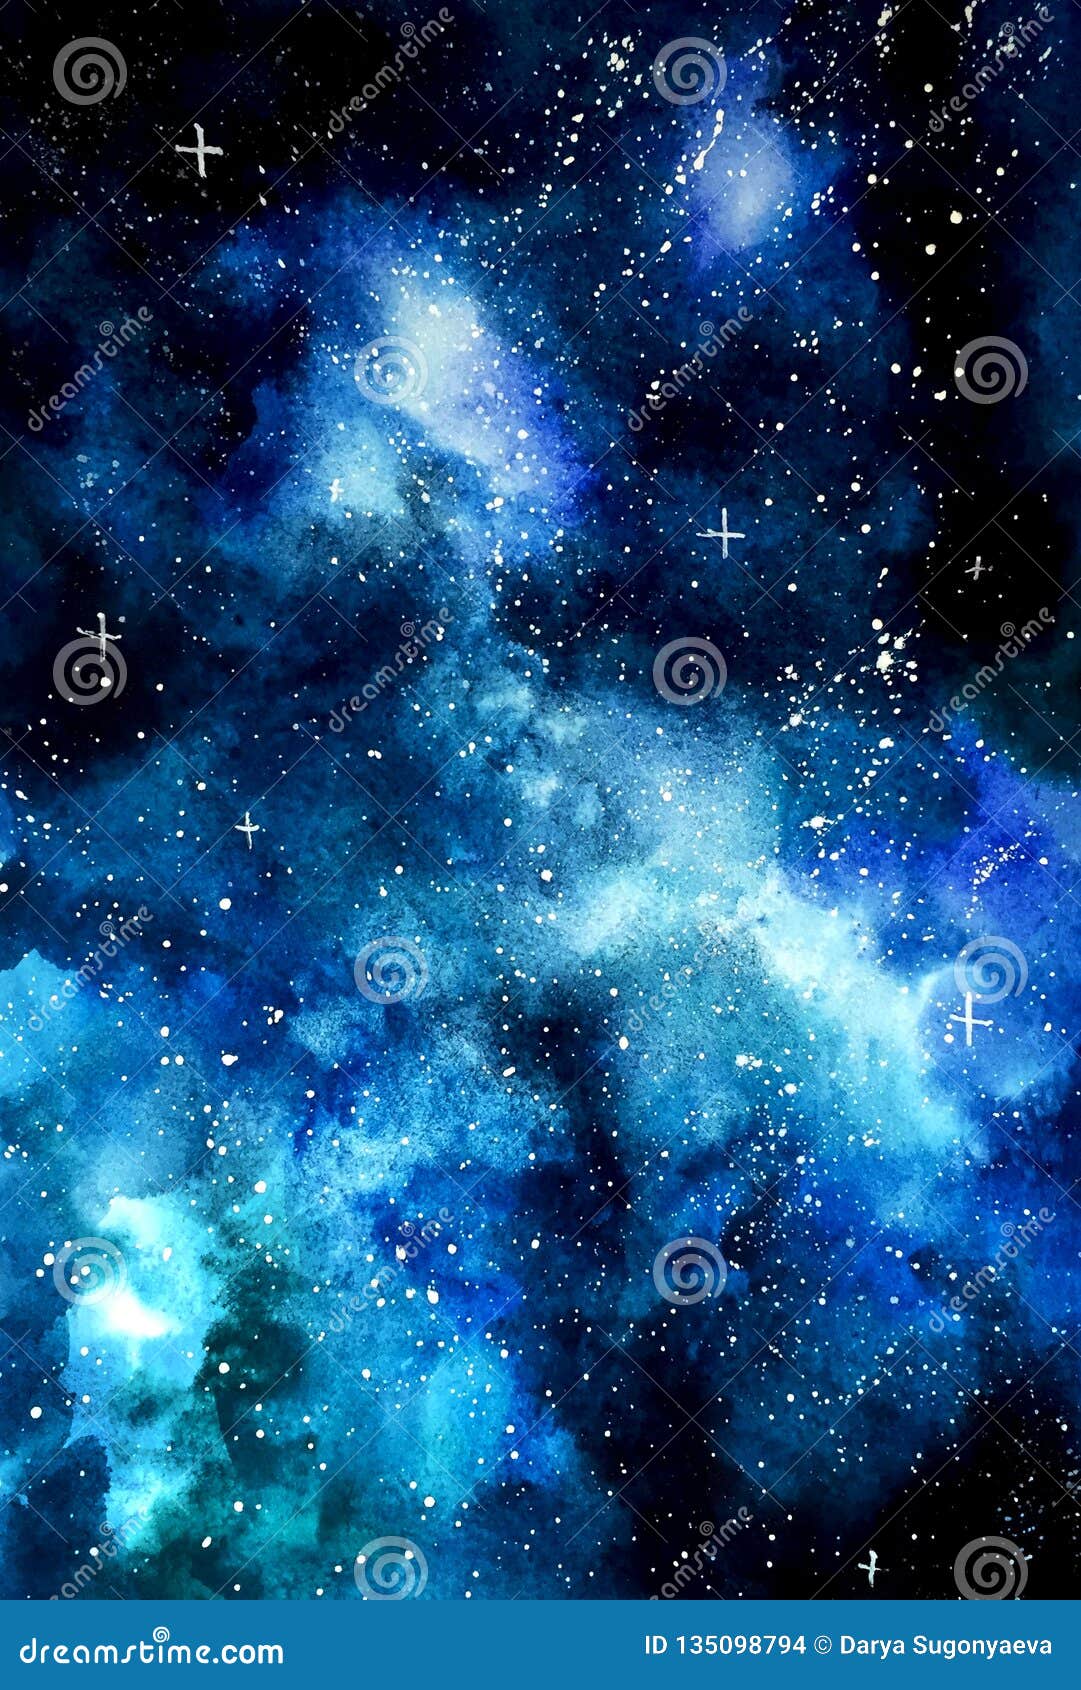 Nền đen cùng với những đốm sao lấp lánh mang lại một không gian vũ trụ đầy ngoạn mục và bí ẩn. Hãy xem hình nền này để cảm nhận được sự lãng mạn và đẹp đẽ của không gian vũ trụ mênh mông này.